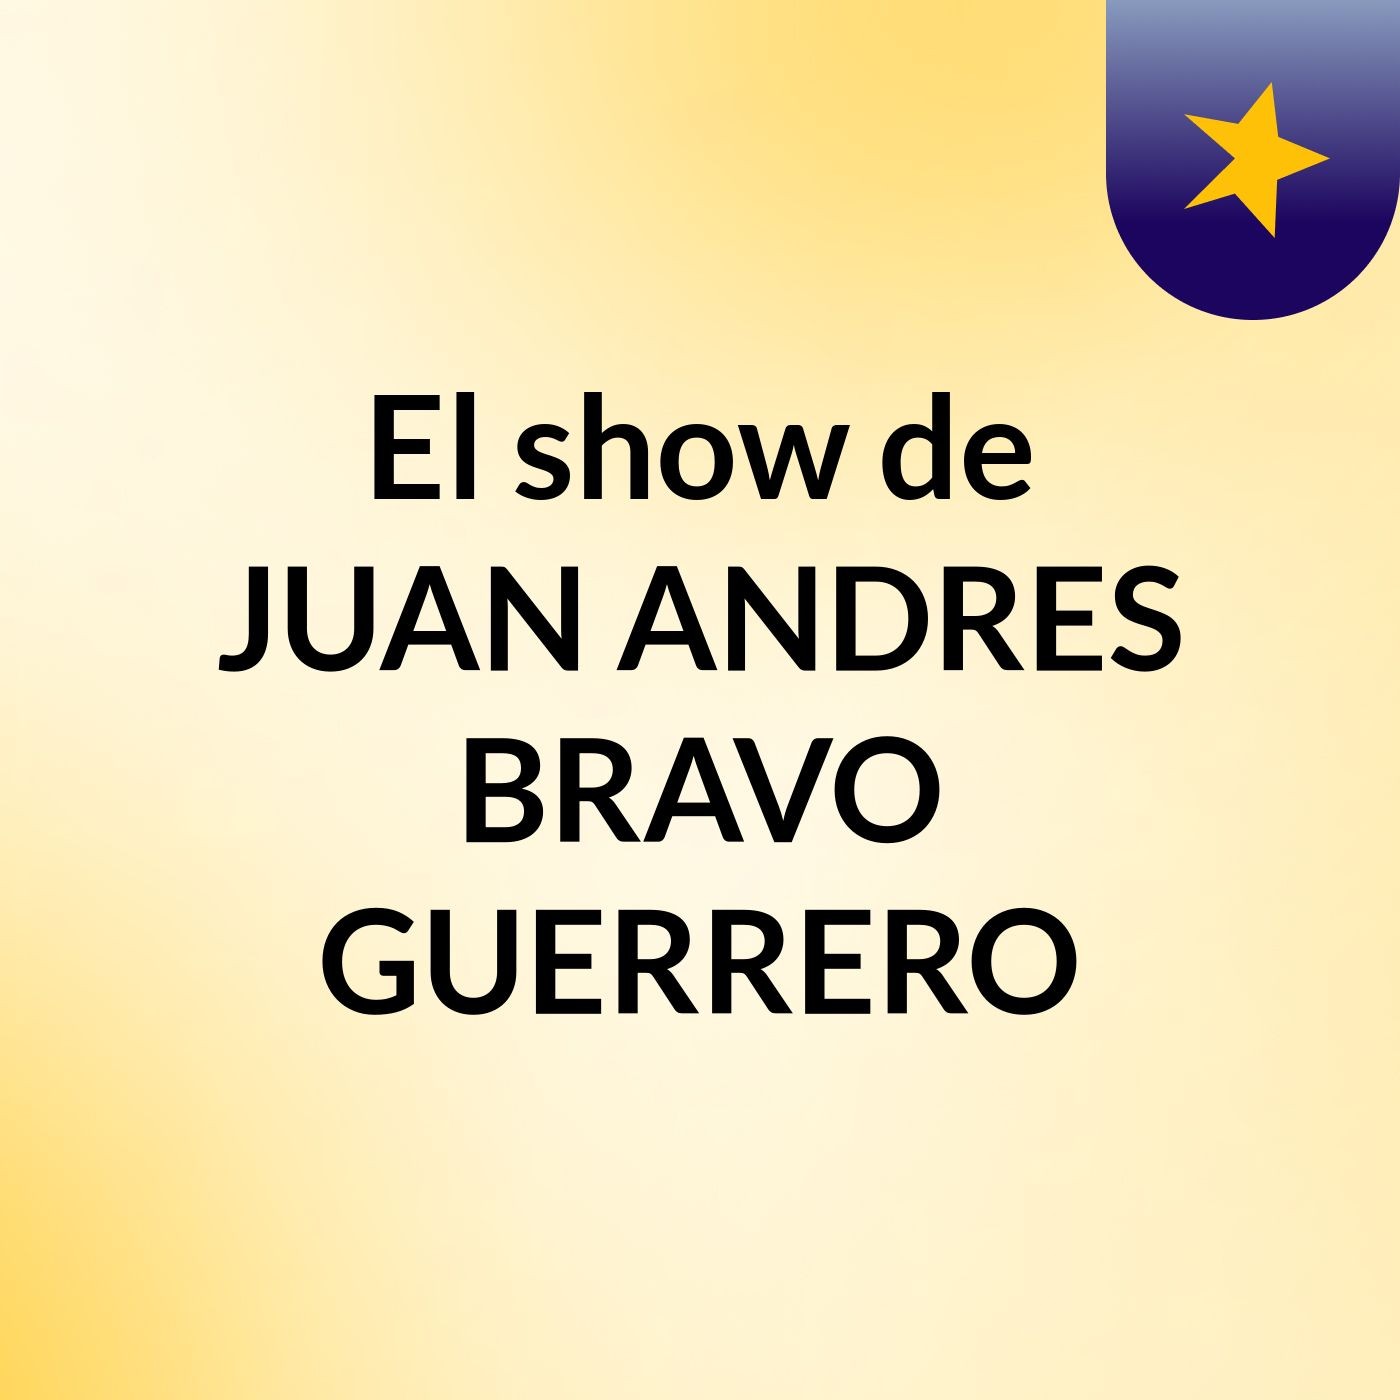 El show de JUAN ANDRES BRAVO GUERRERO